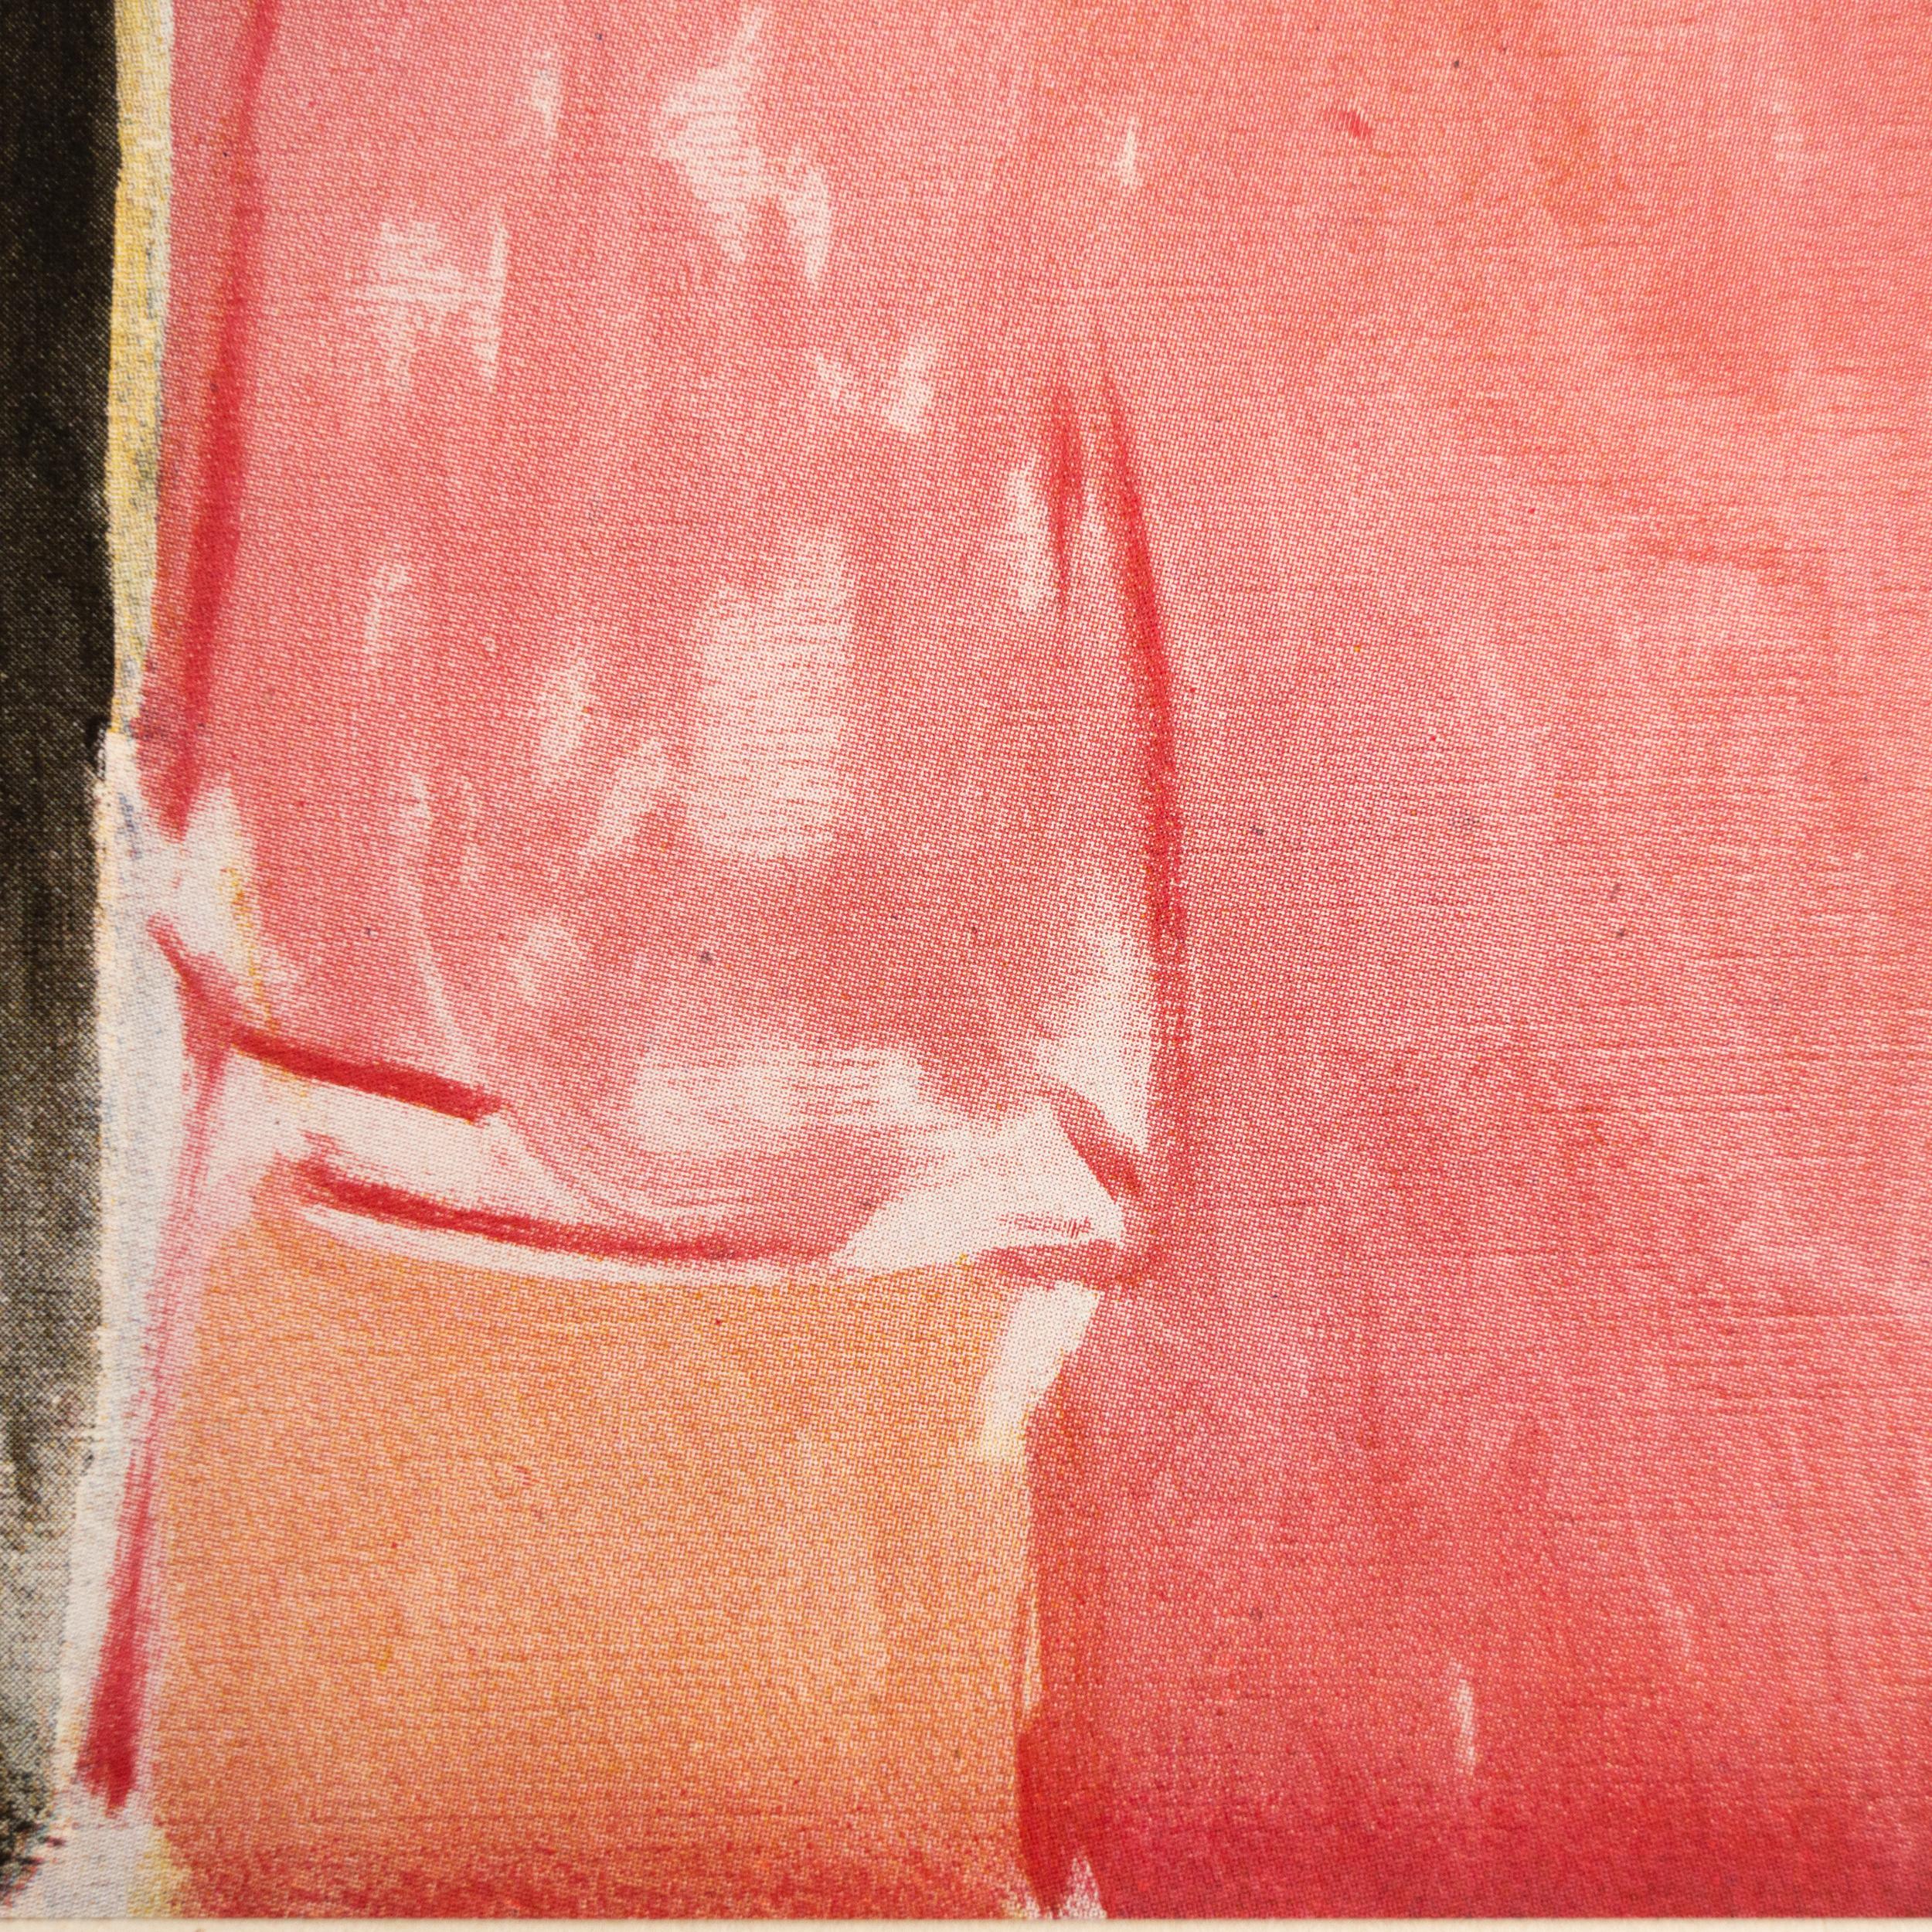 Rare Color Lithograph: A Glimpse into Matisse's Artistic Mastery For Sale 1